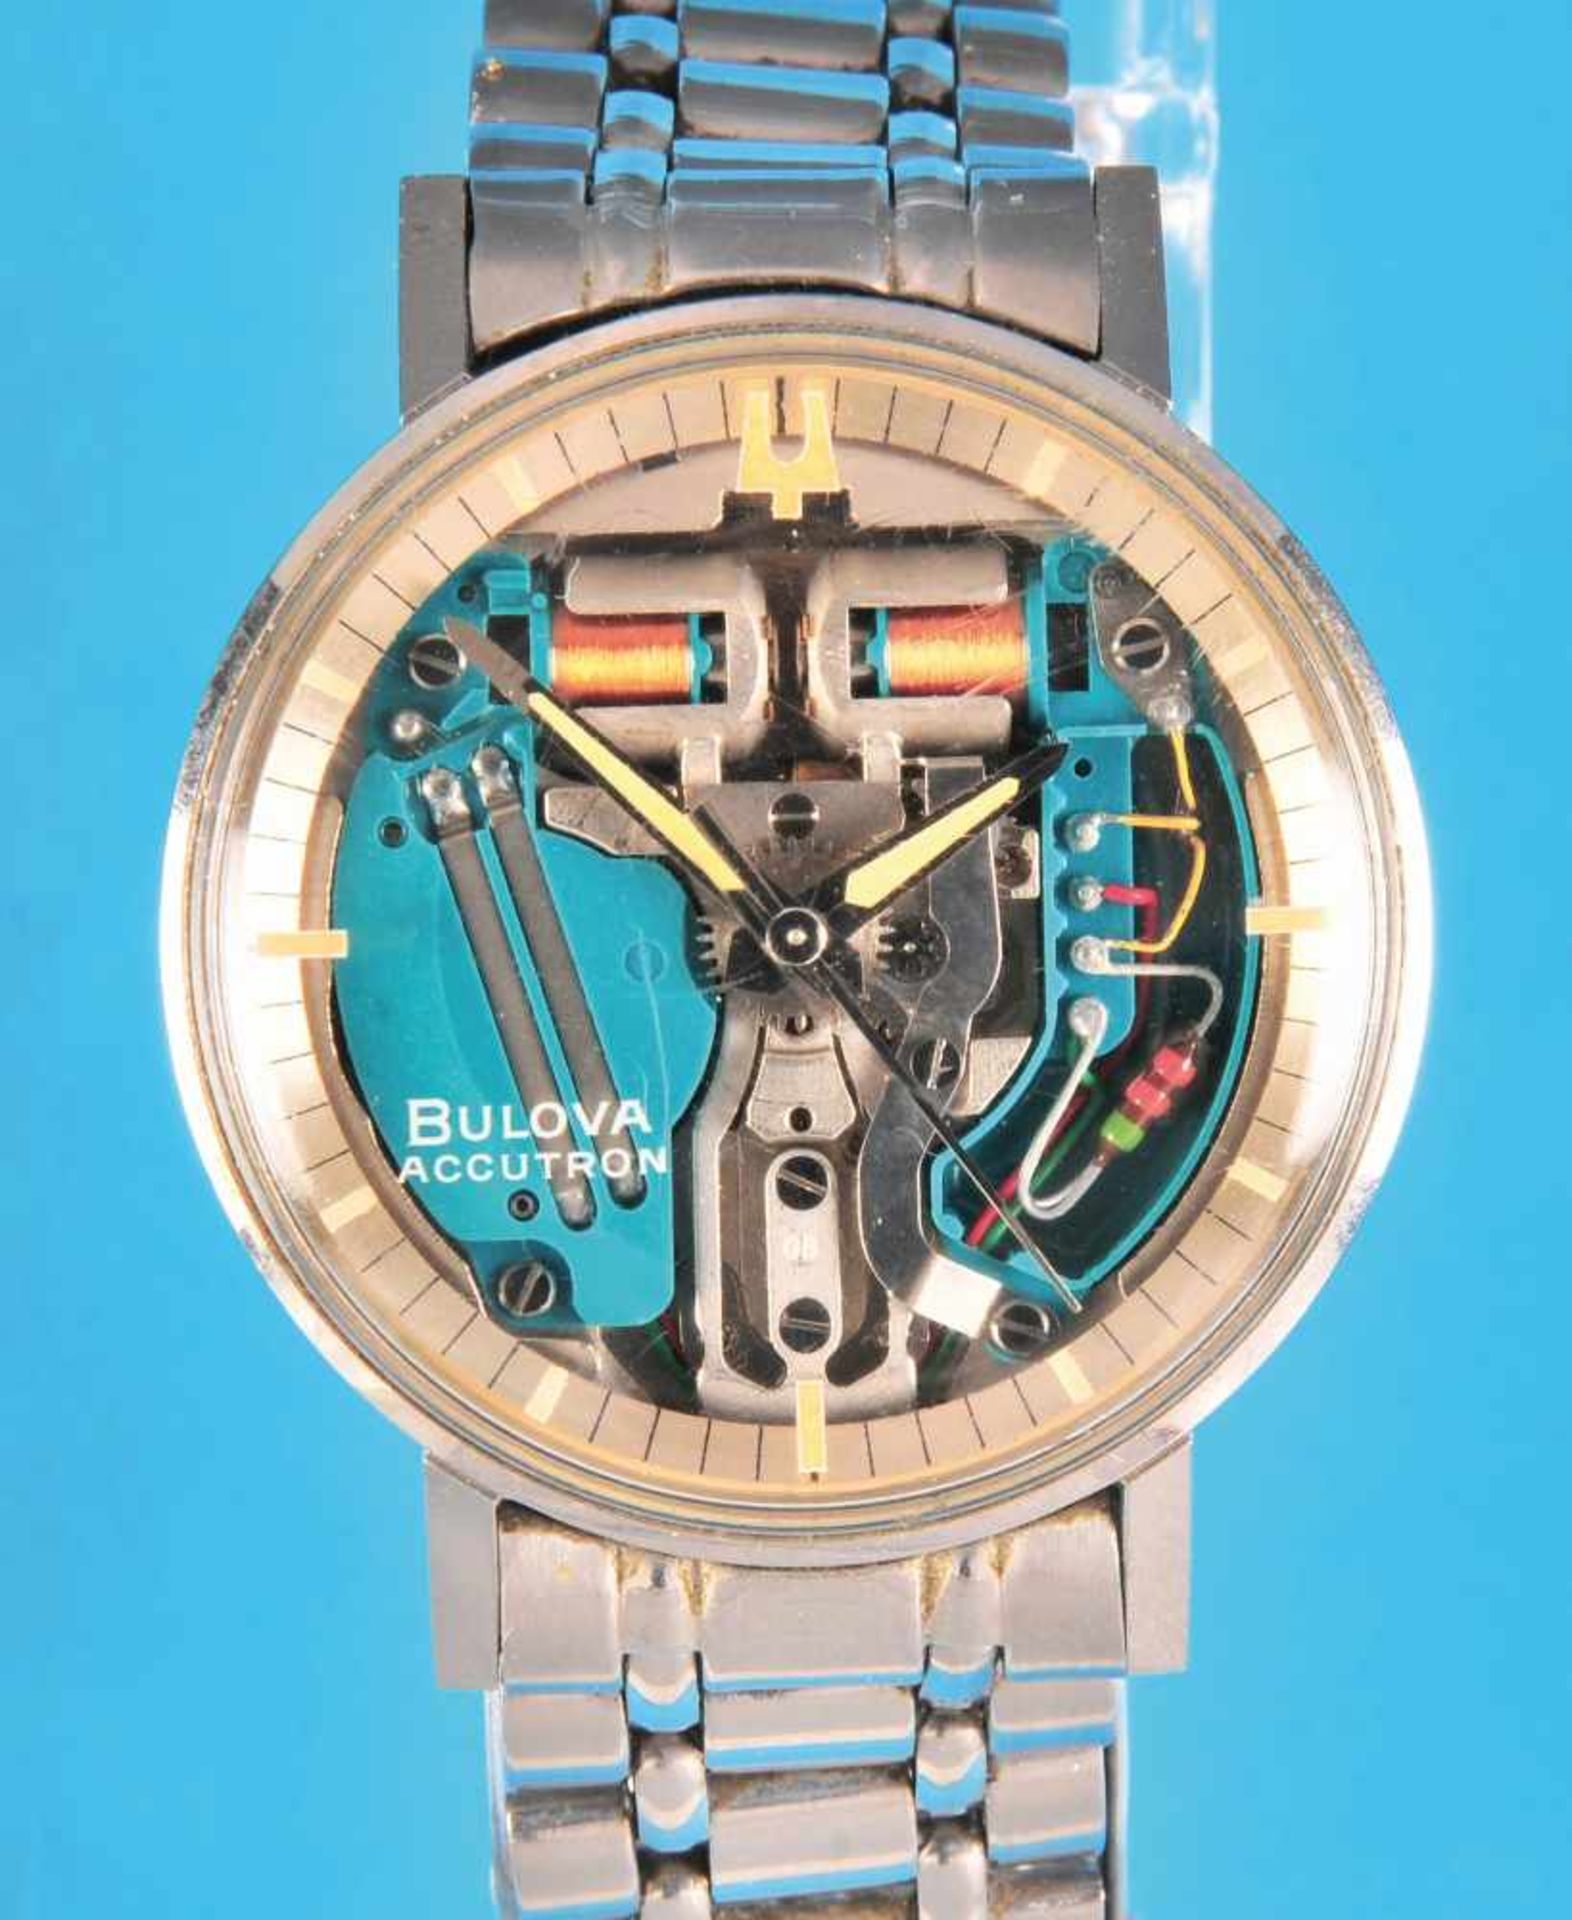 Bulova-Accutron-Armbanduhr mit Gliederband, verschraubtes Gehäuse, Zifferblatt mit Stundenindex,